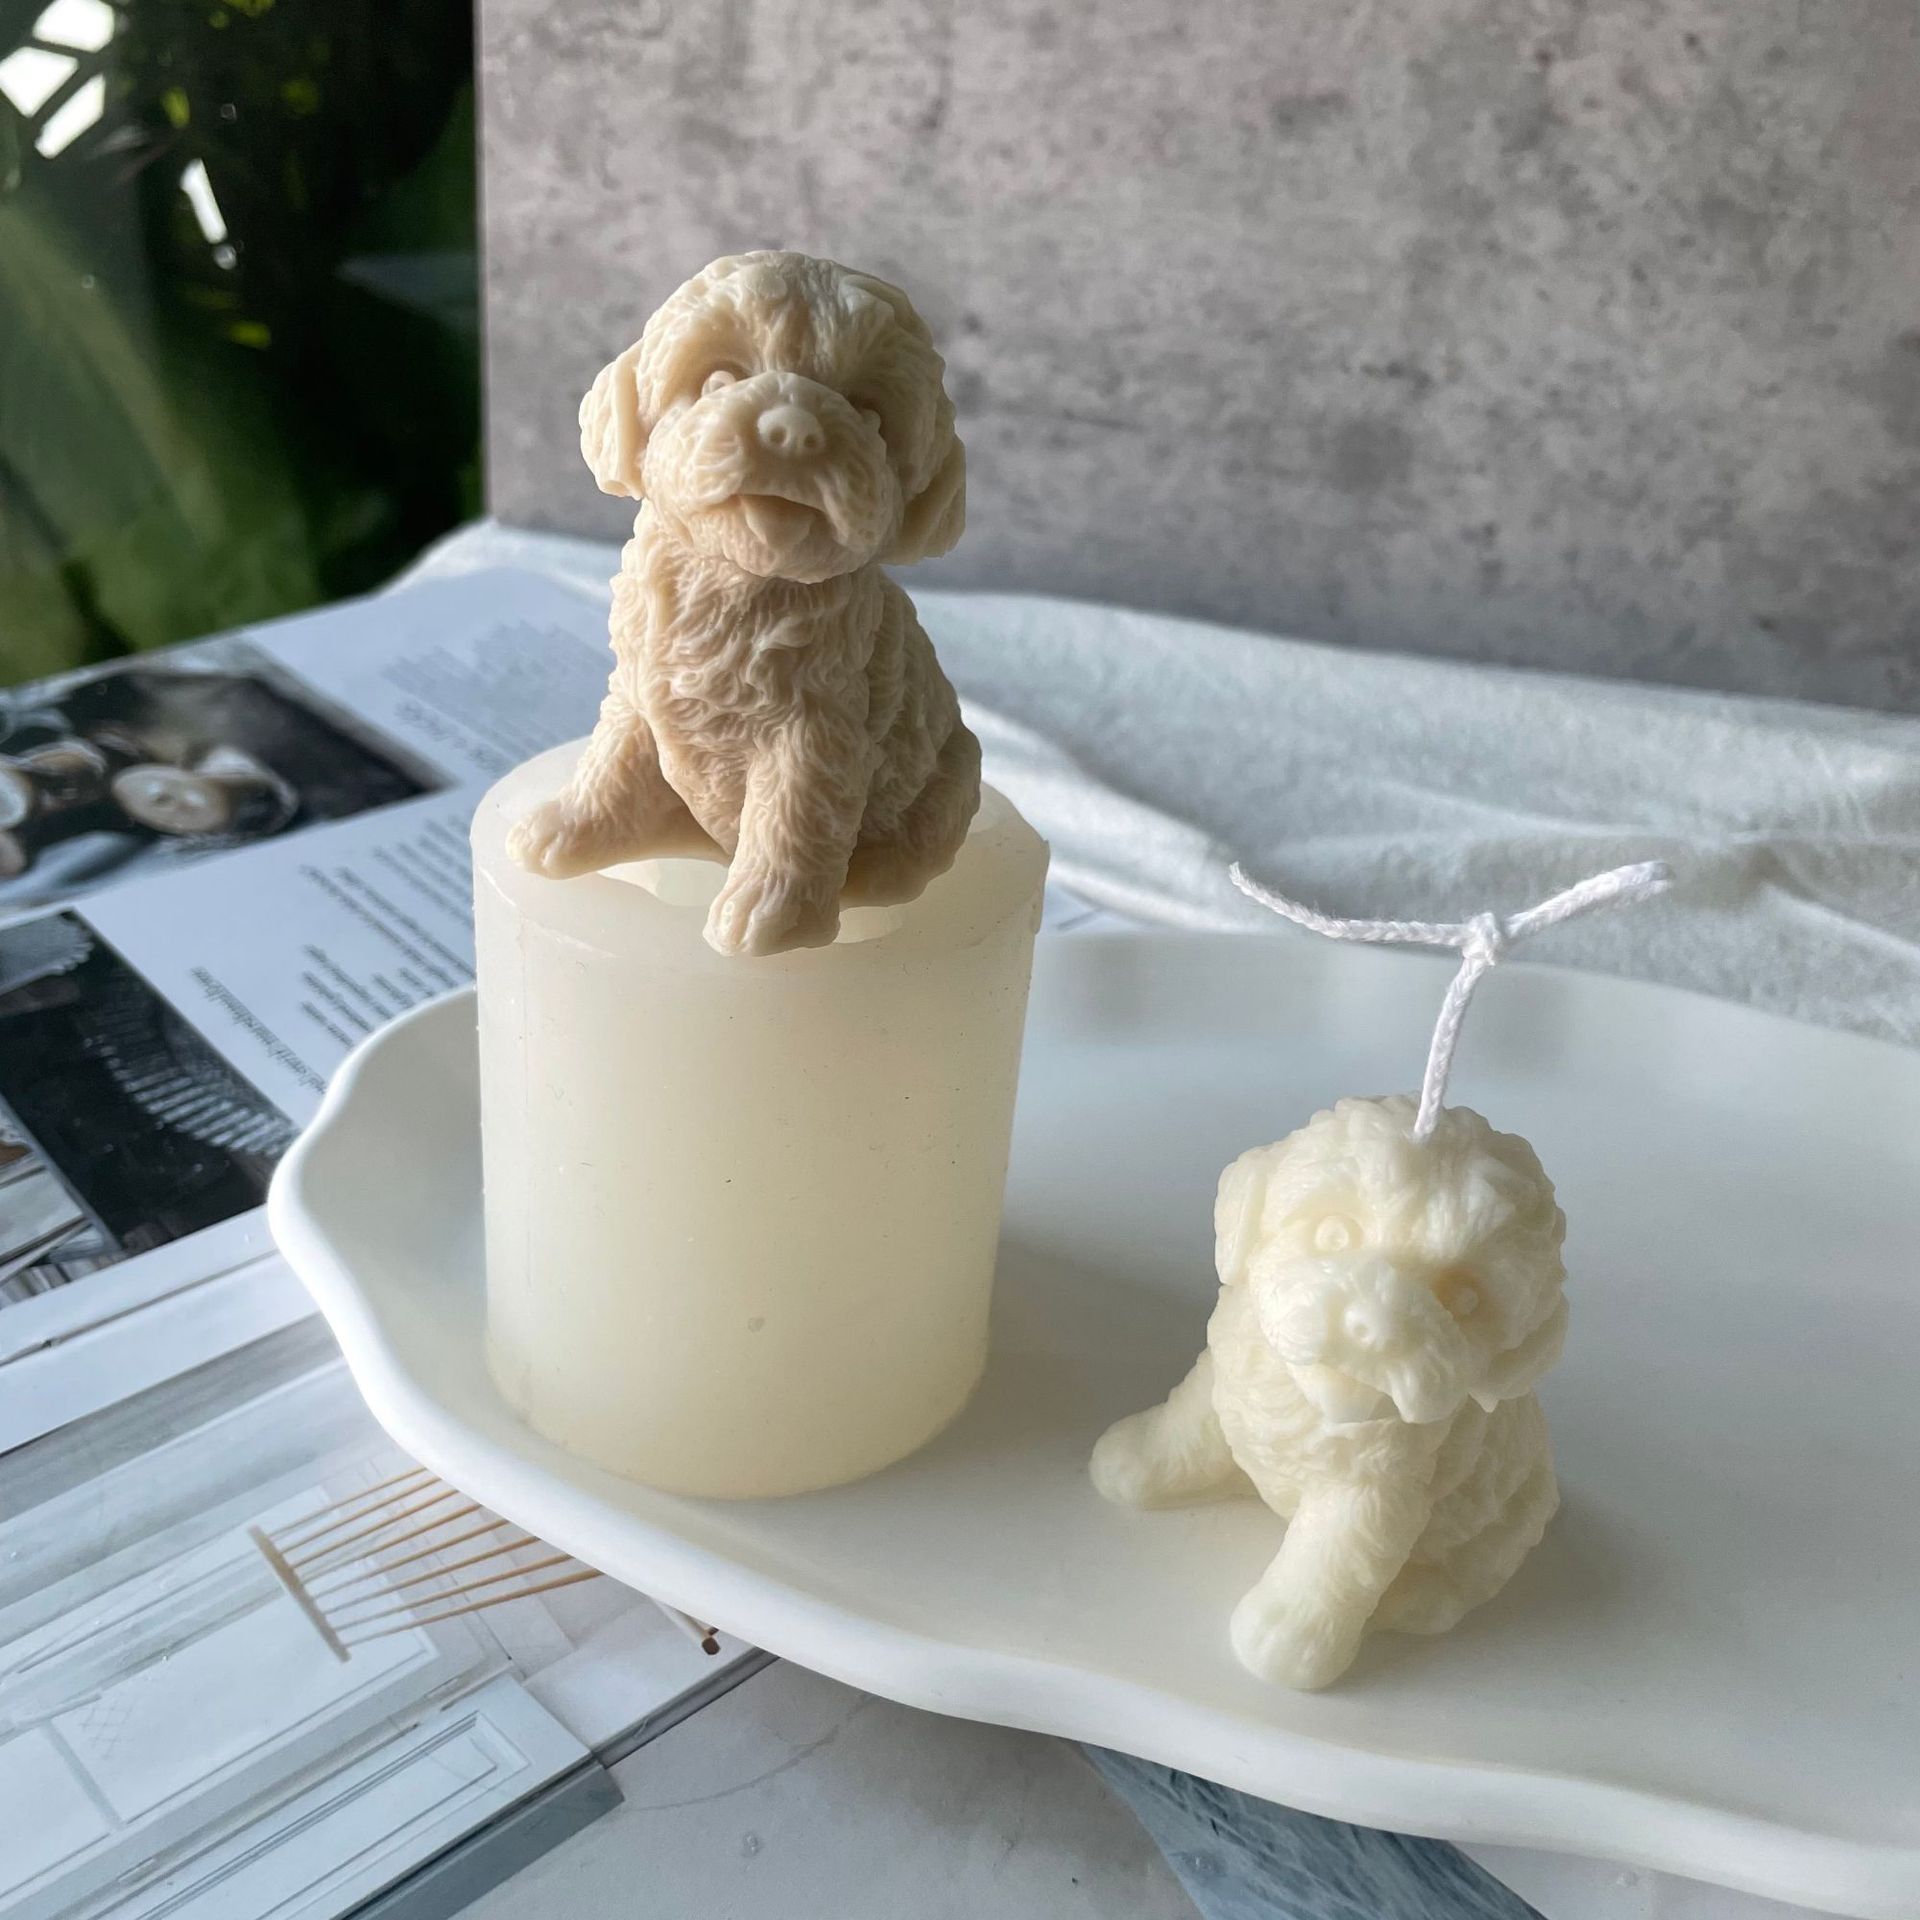 J1149 3D DIY موم موم بتی کتے کی شکل بنانے والی صابن رال مولڈ ٹیڈی پپی کینڈل سلیکون مولڈ